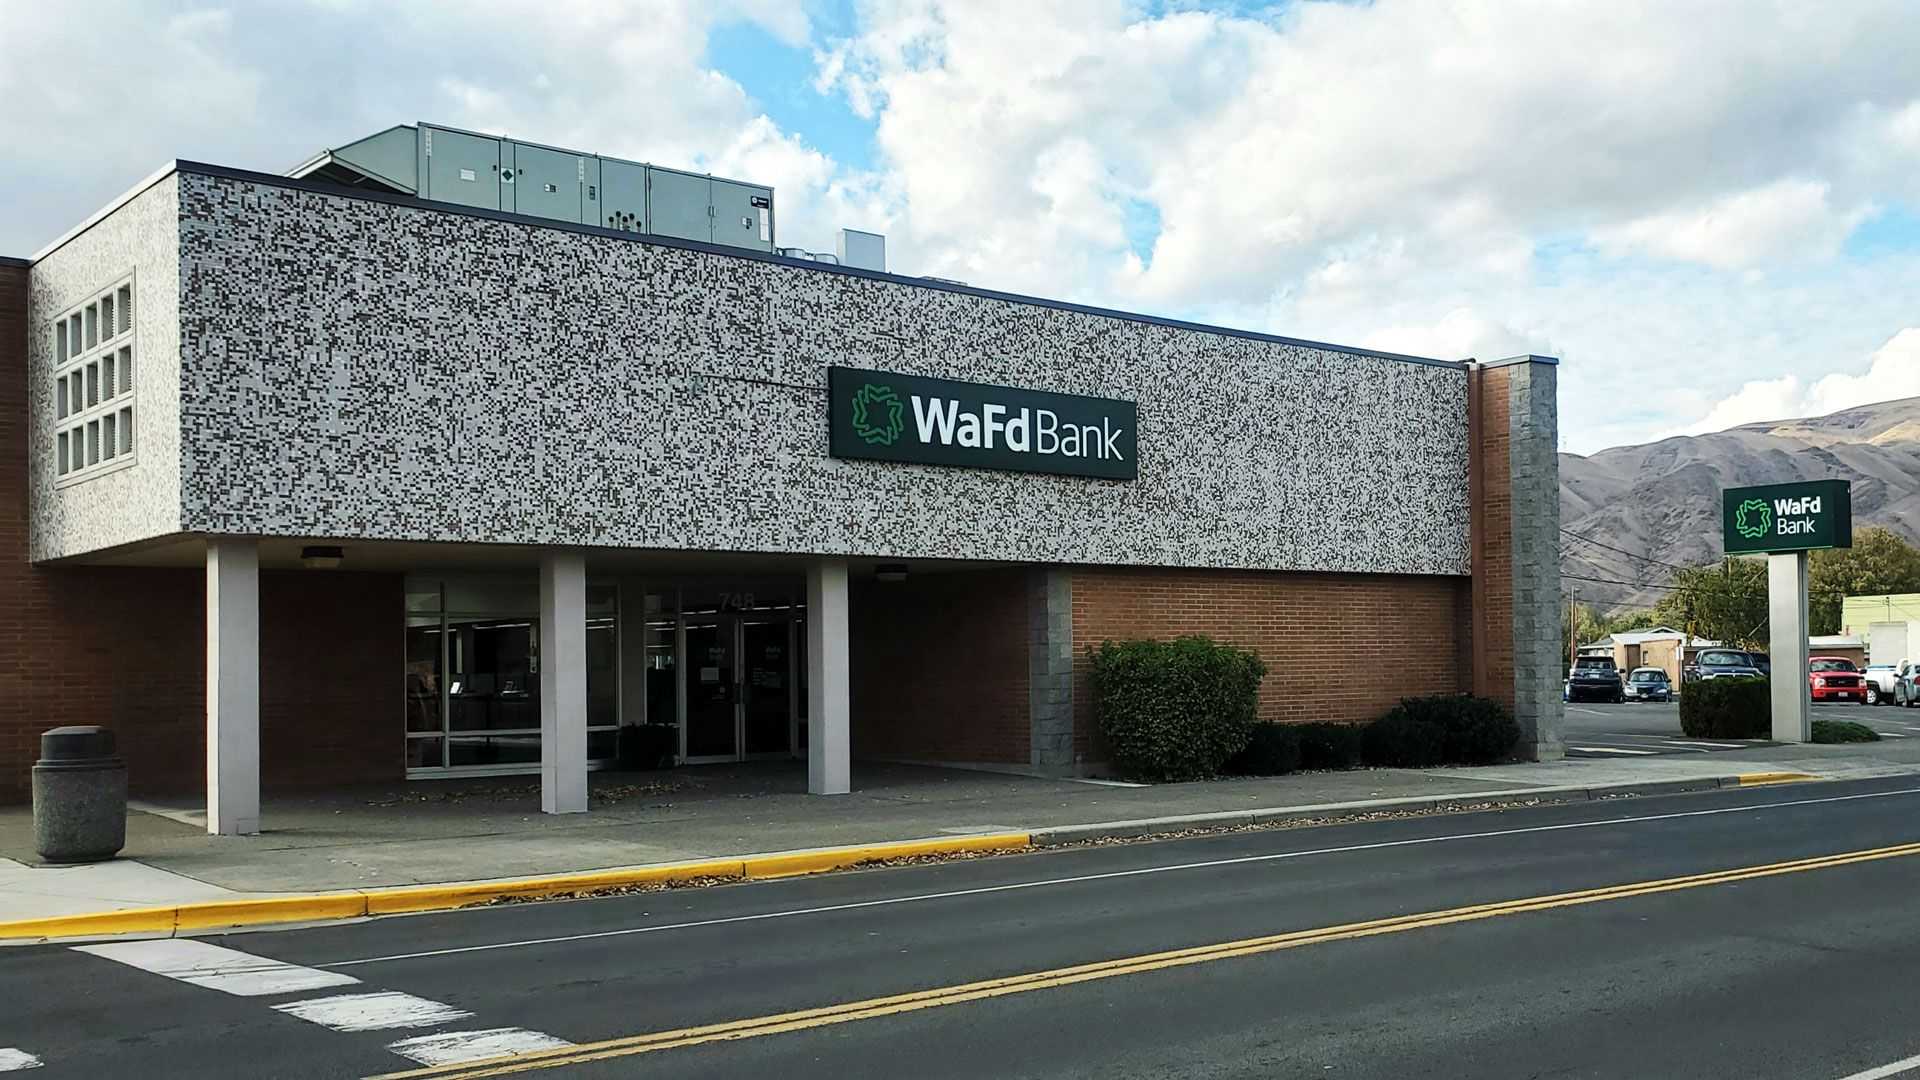 WaFd Bank in Clarkston, Washington #1331 - Washington Federal.